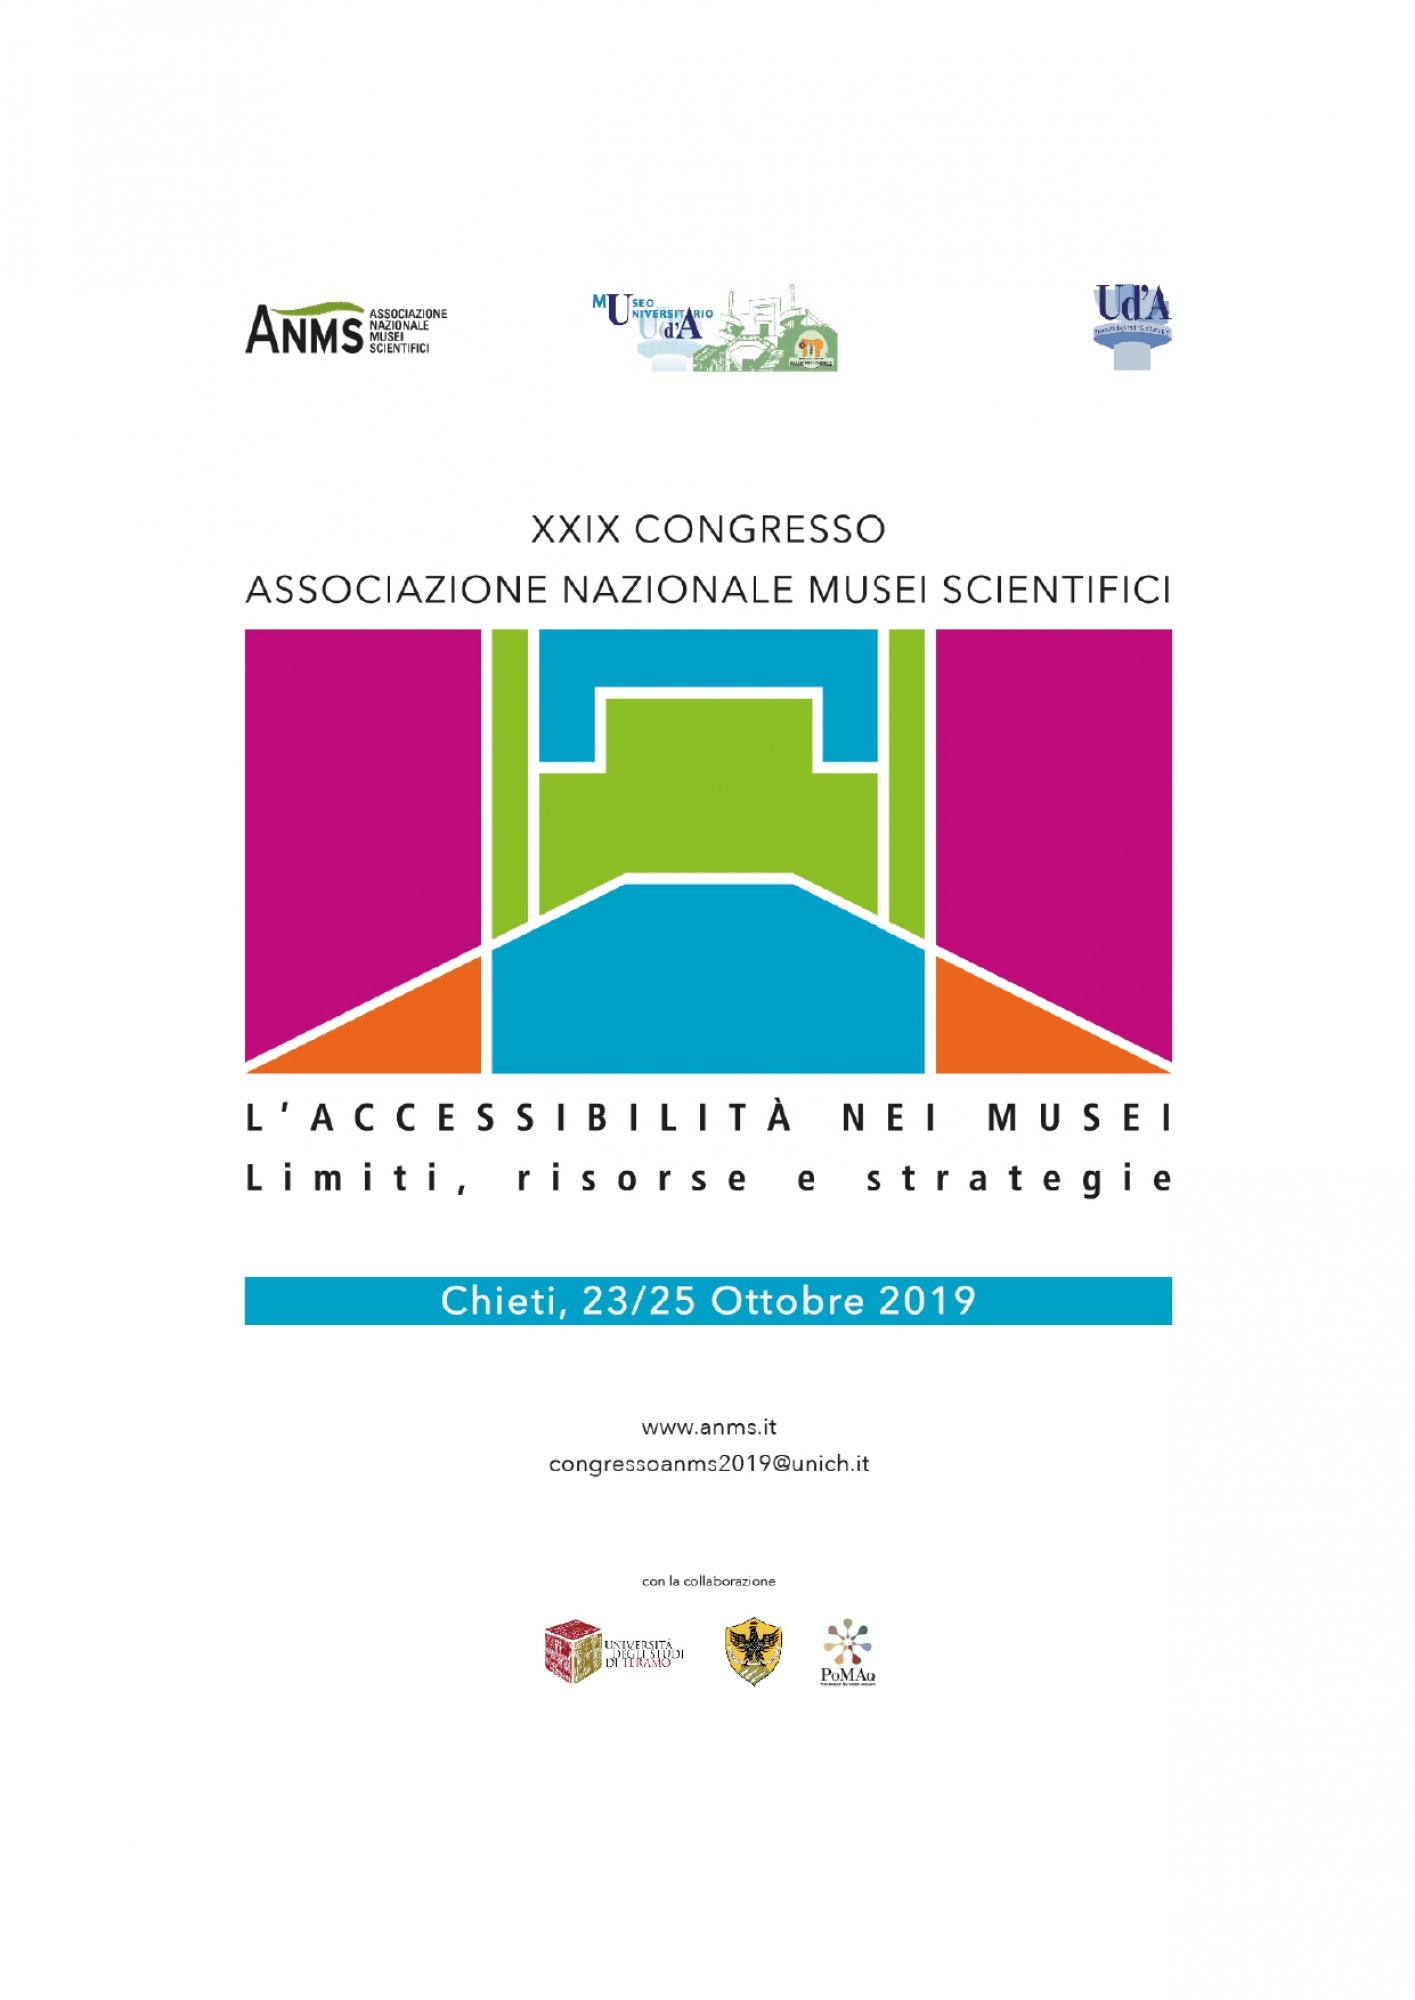  XXIX CONGRESSO ANMS - L’ACCESSIBILITÀ NEI MUSEI. Limiti, risorse e strategie Chieti, Museo Universitario 23-25 Ottobre 2019